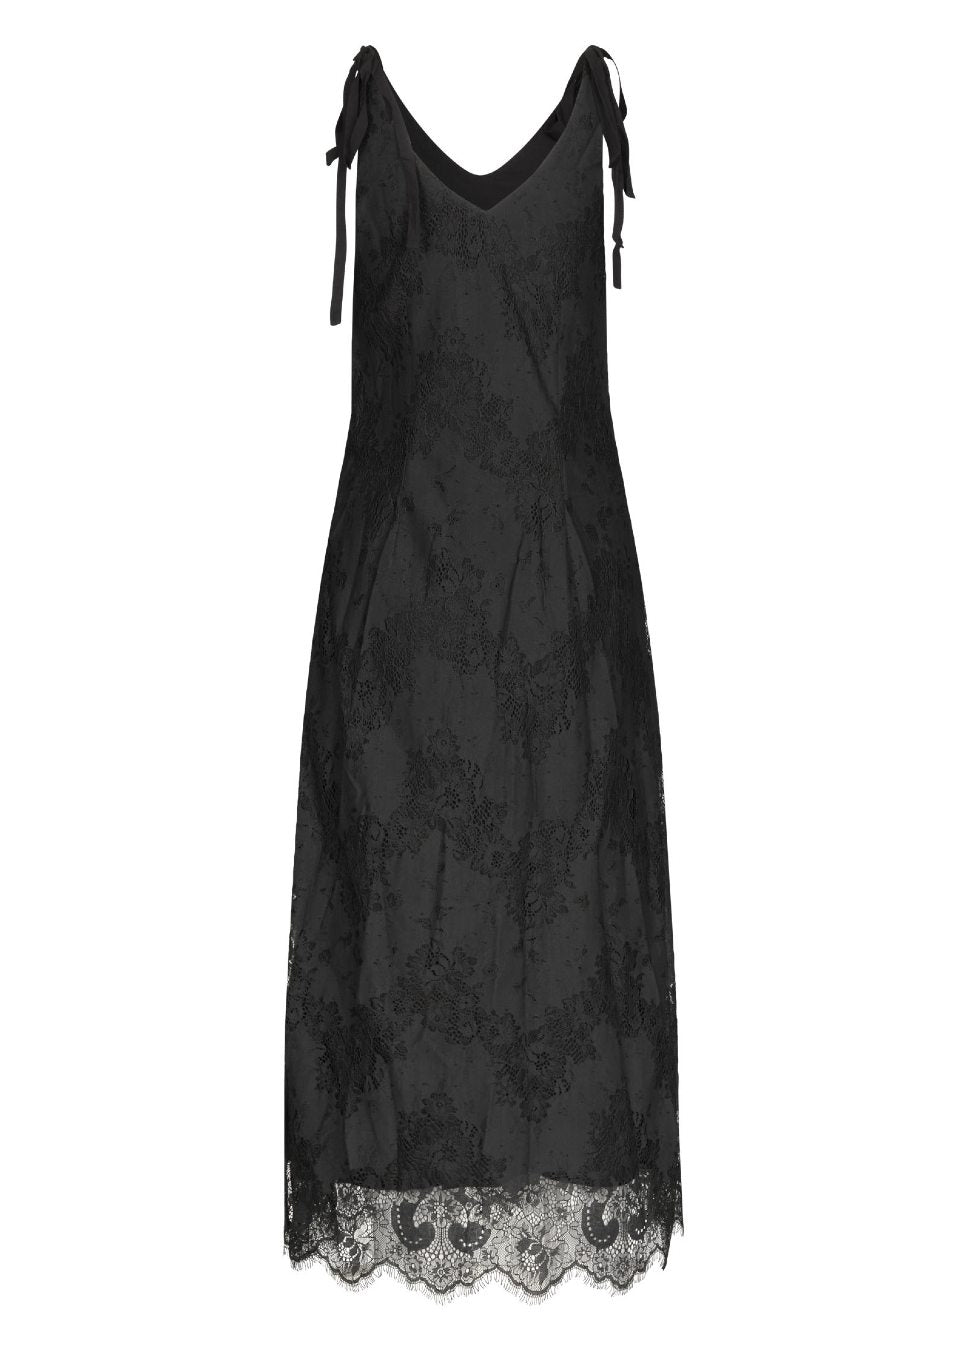 Zwarte jurk Benecia I Perfect voor een feestje, deze mooie zwarte jurk Benecia van het merk mbyM. De zwarte lange jurk heeft dunne bandjes die je kunt strikken waardoor de jurk in lengte verstelbaar is. De zwarte jurk heeft een V-hals hals voor en achter en mooie kanten details. Zwarte kanten jurken bij Boetiek Aniek.